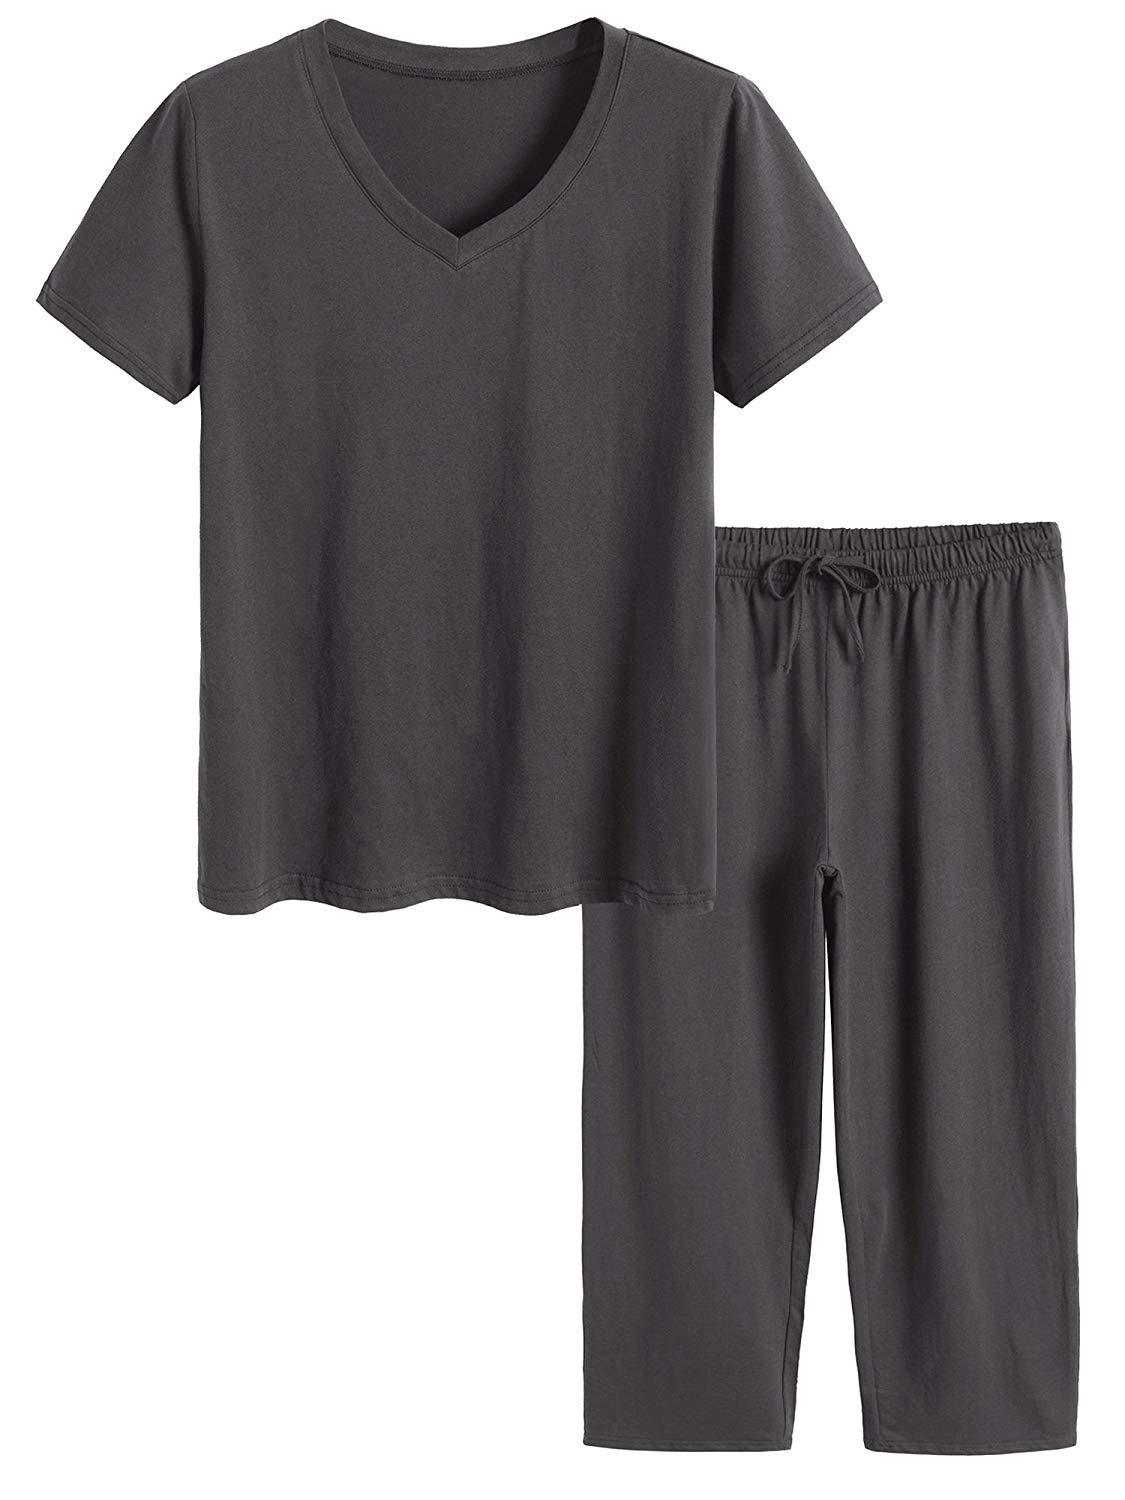 Latuza Men's Cotton Pajamas Set Button Up Shirt and Pants for